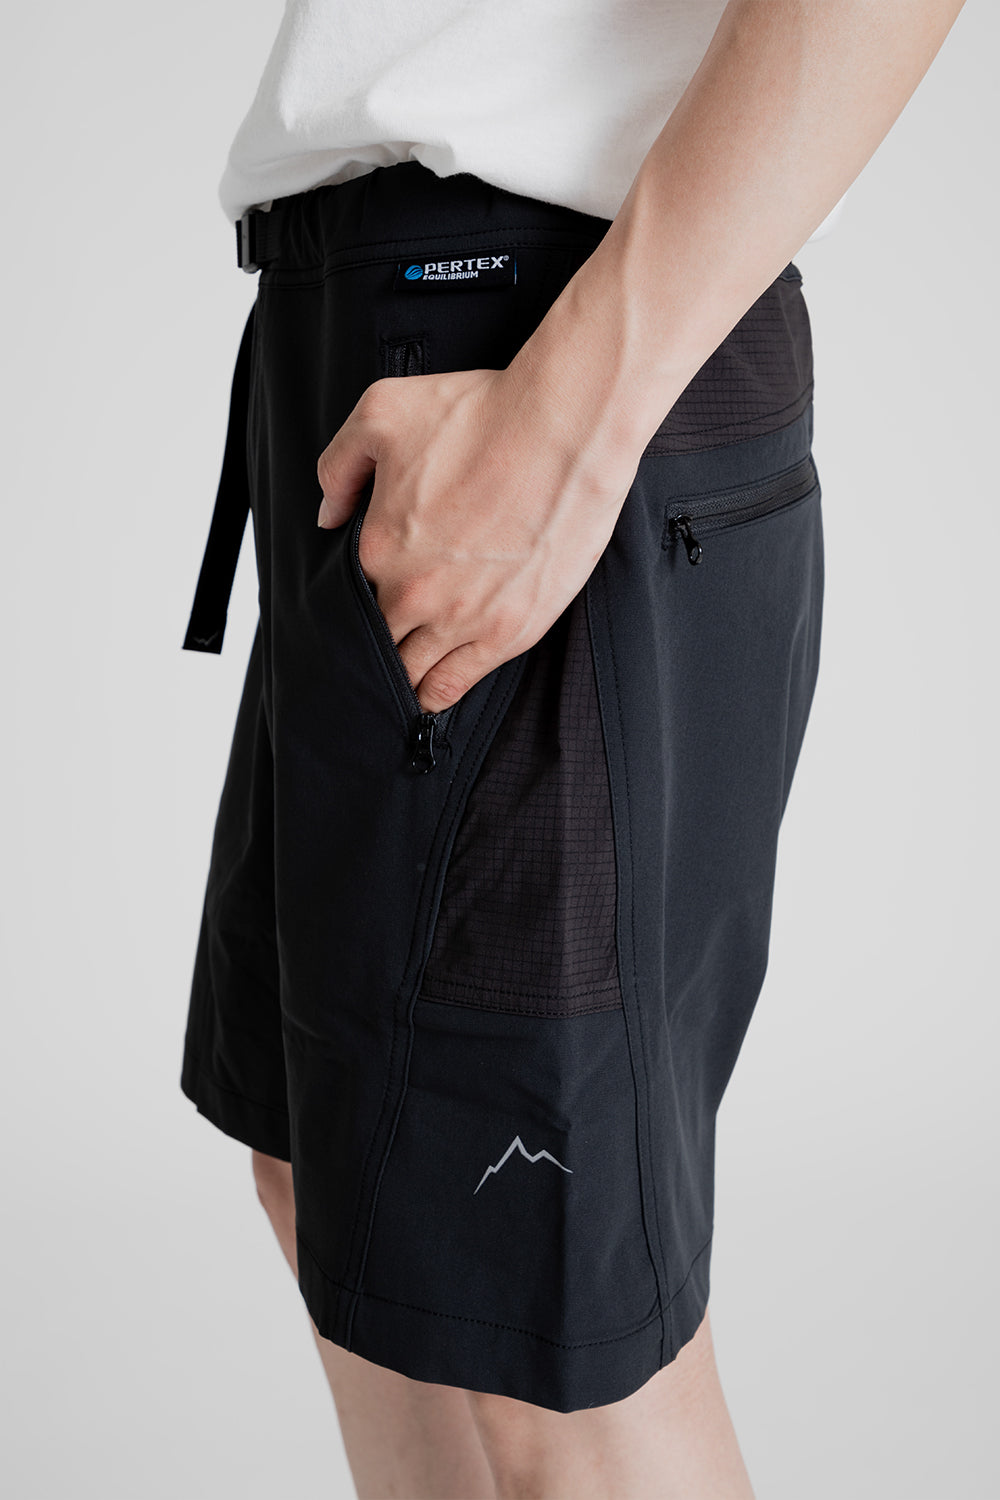 Cayl EQ Hybrid Shorts in Black